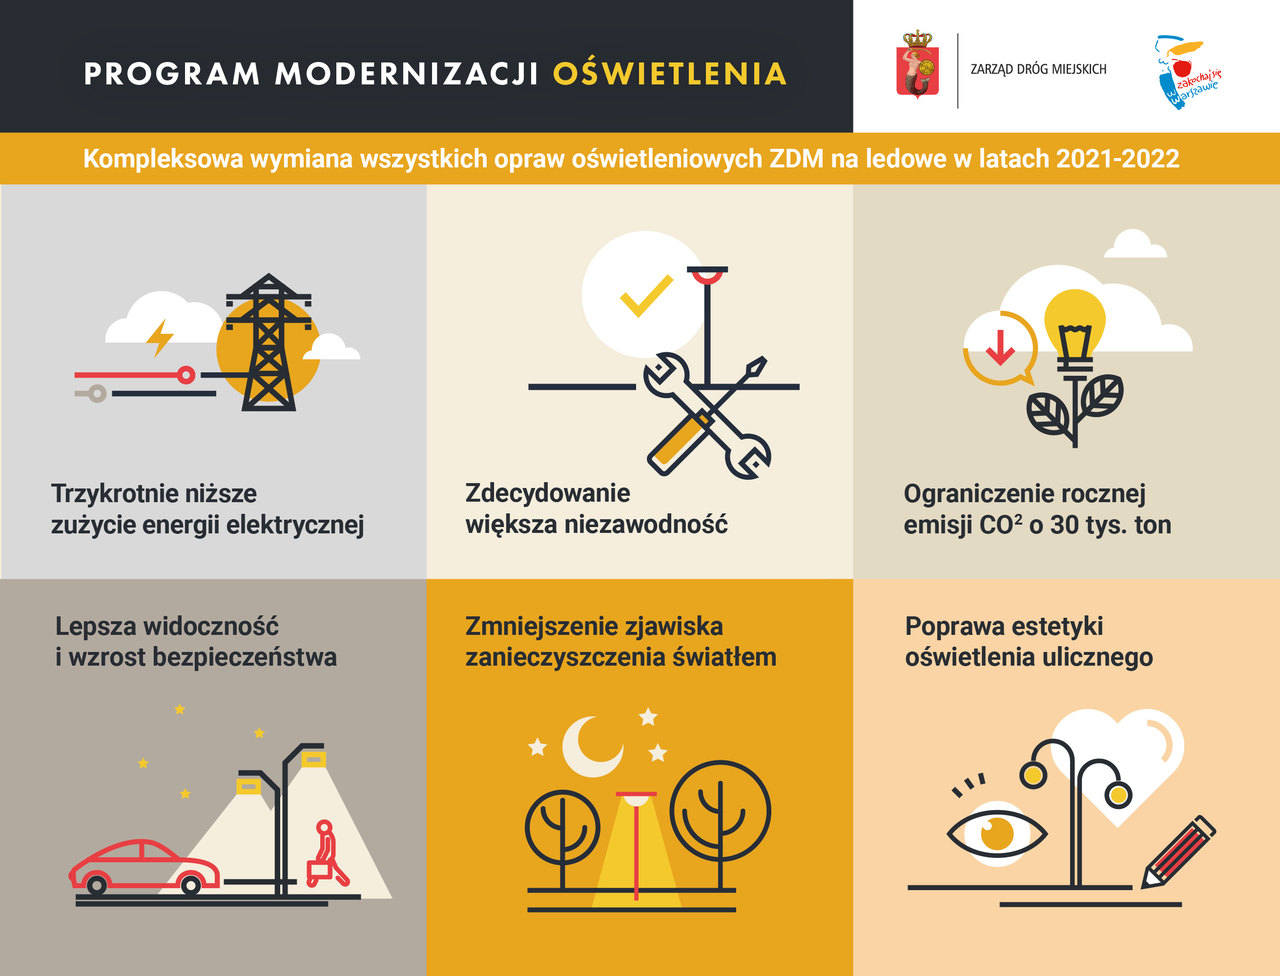 Program modernizacji oświetlenia w Warszawie